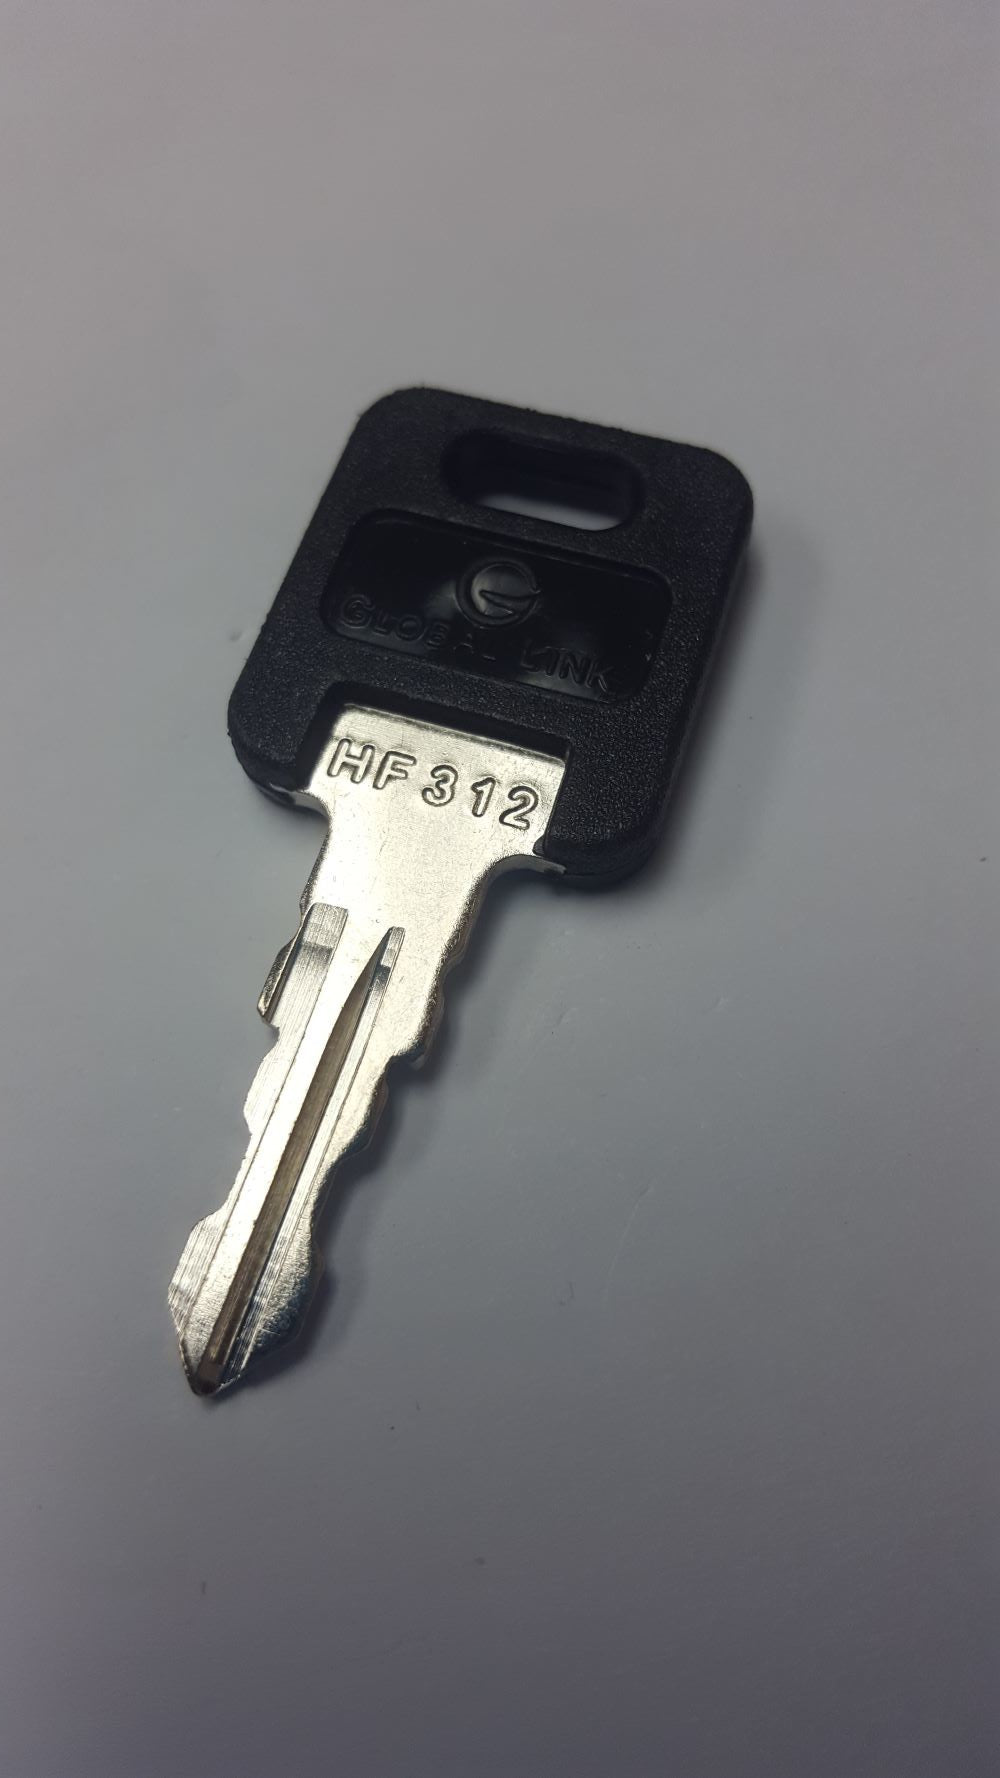 CPG KEY-HF-312 Pre-cut Stamped FIC Replacemnt HF312 Key